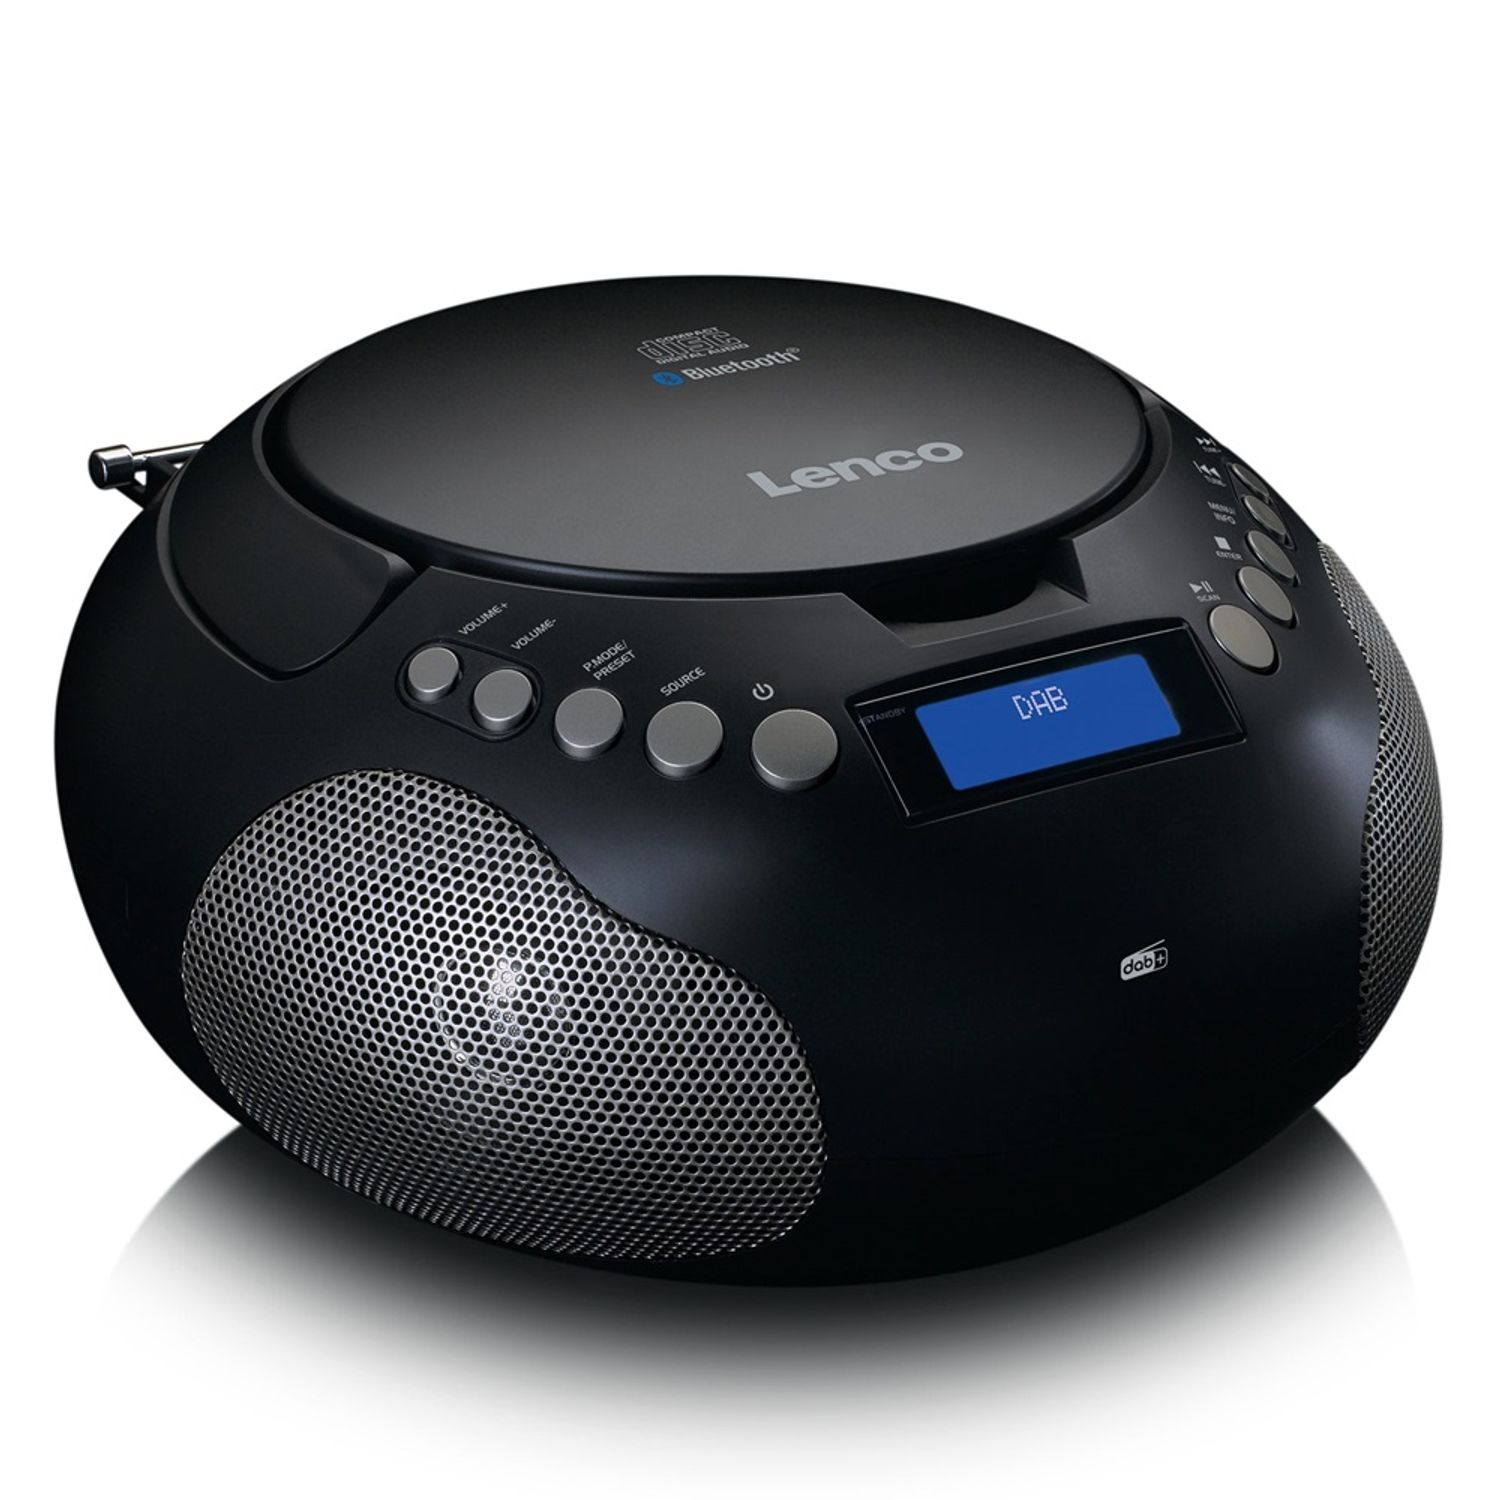 LENCO SCD-341 Multifunktionsradio, DAB+, FM, AM, DAB+, Bluetooth, FM, schwarz DAB